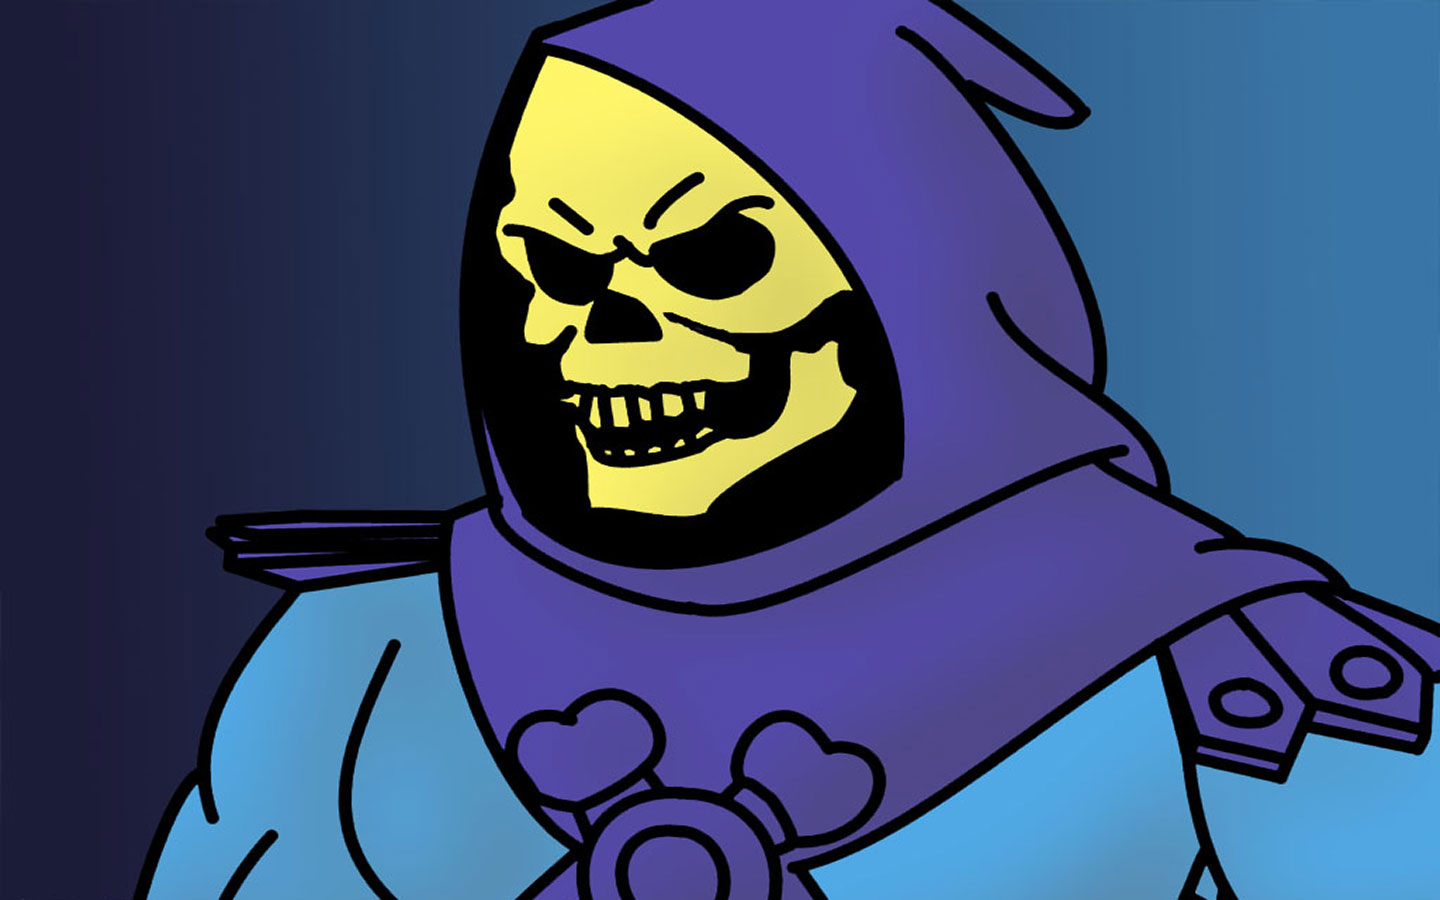 Evil Skeletor from He-Man